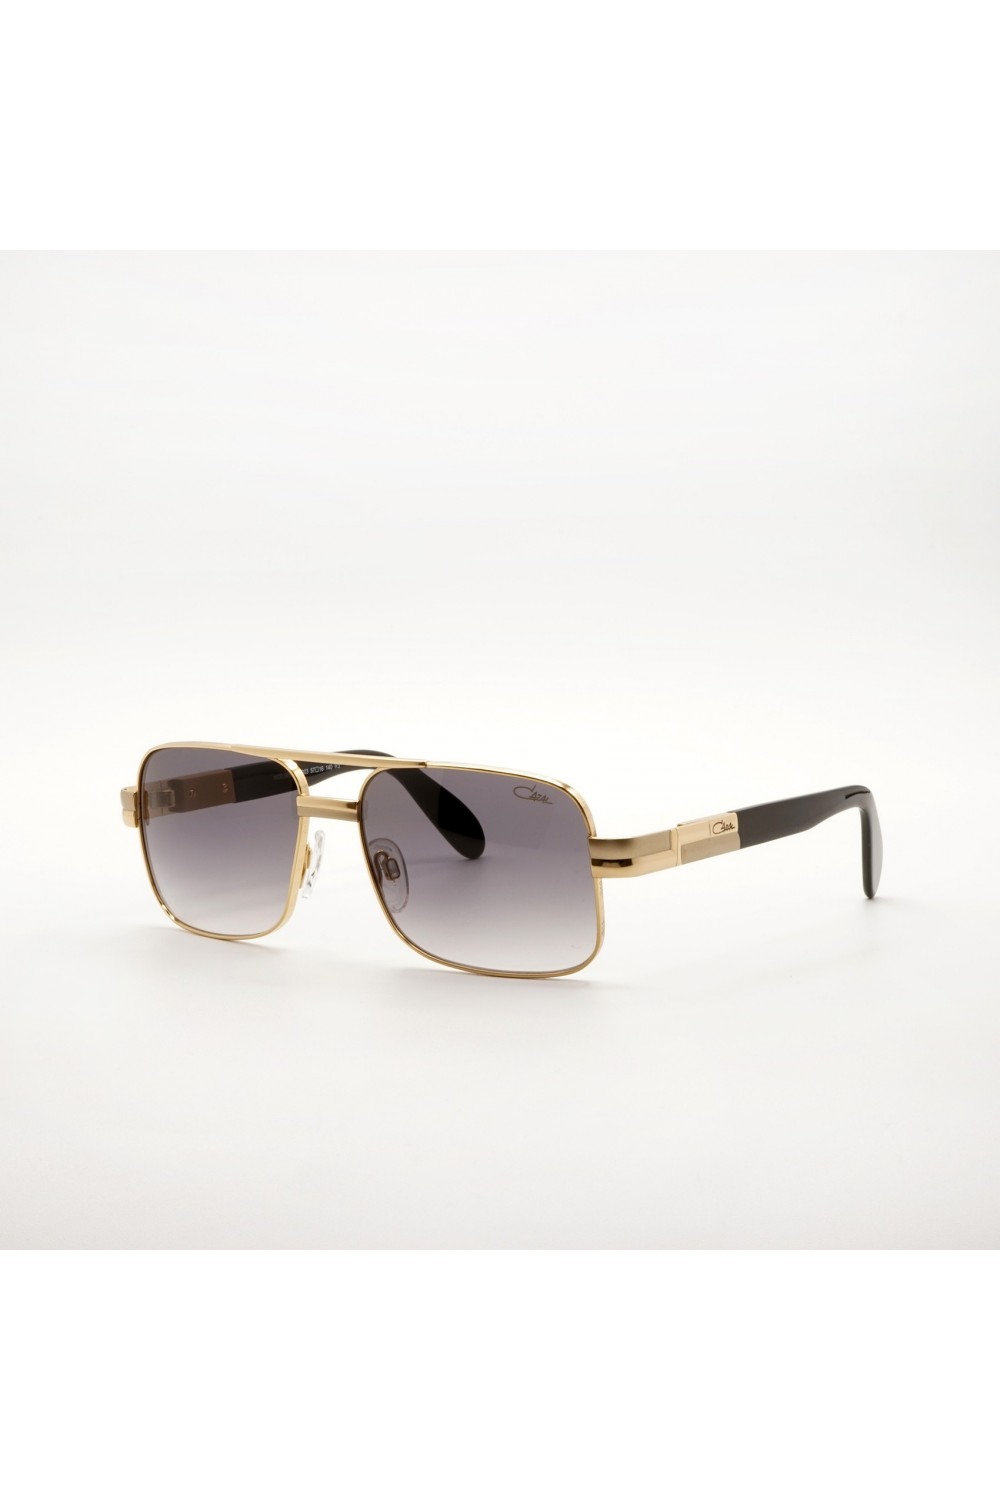 Cazal - Occhiali da sole in metallo squadrati per uomo oro - 988 003